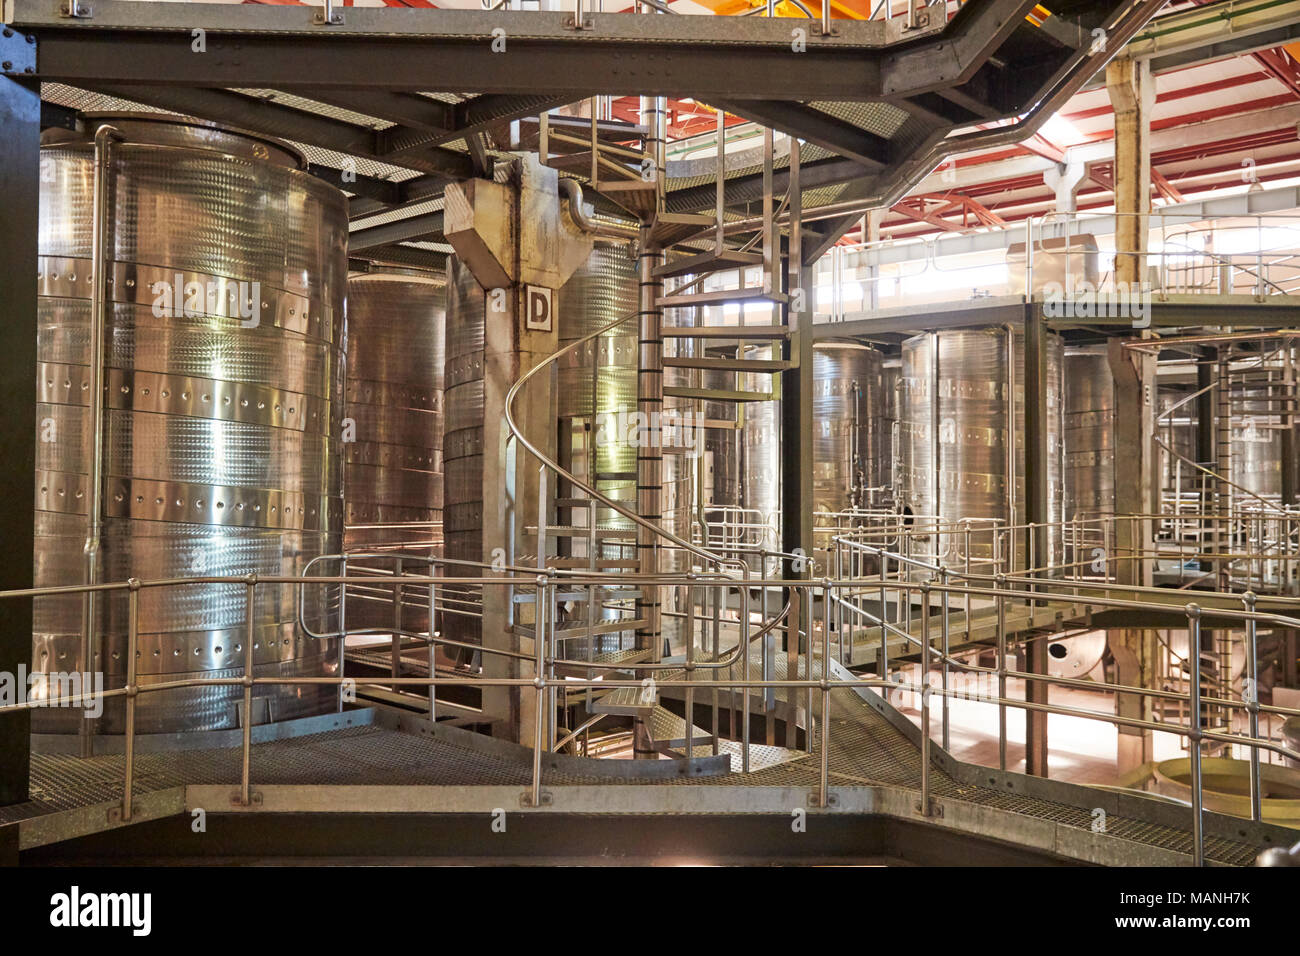 Escaliers en spirale dans un intérieur installation modernes de vinification Banque D'Images